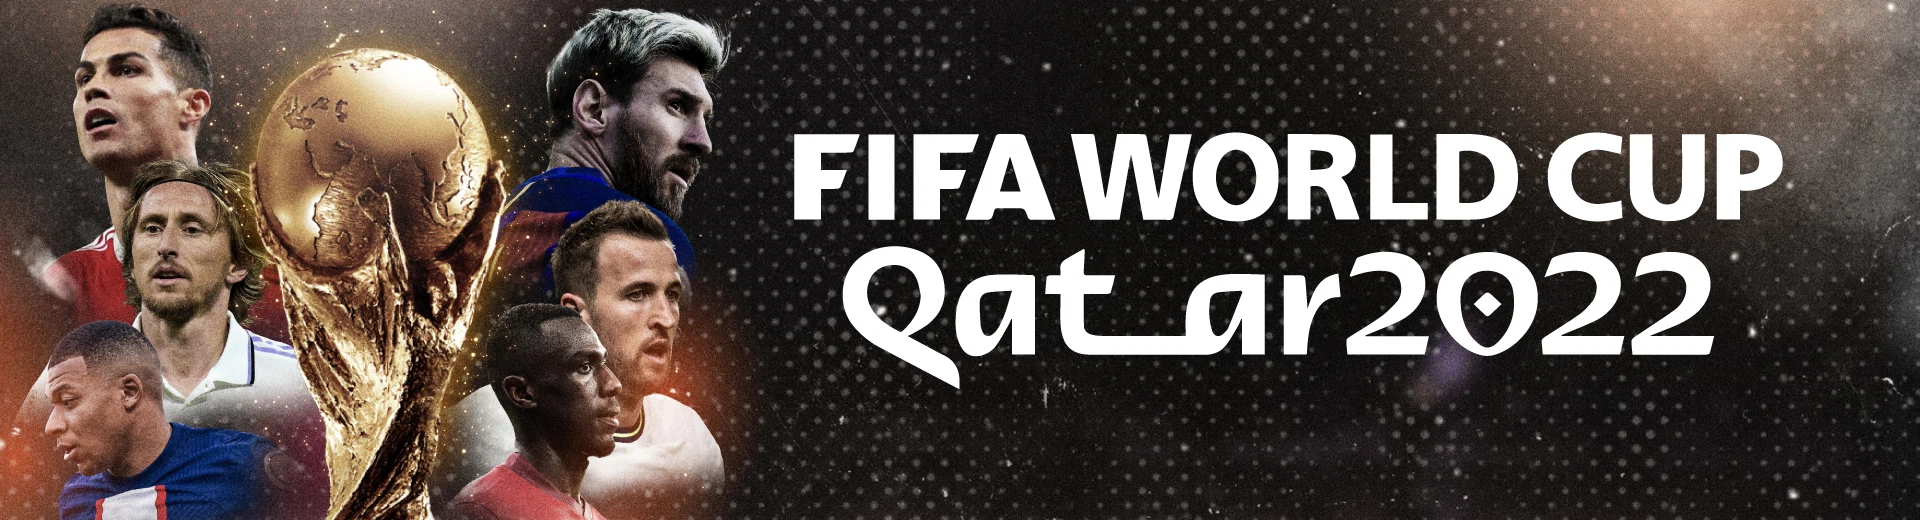 okbet world cup qatar 2022